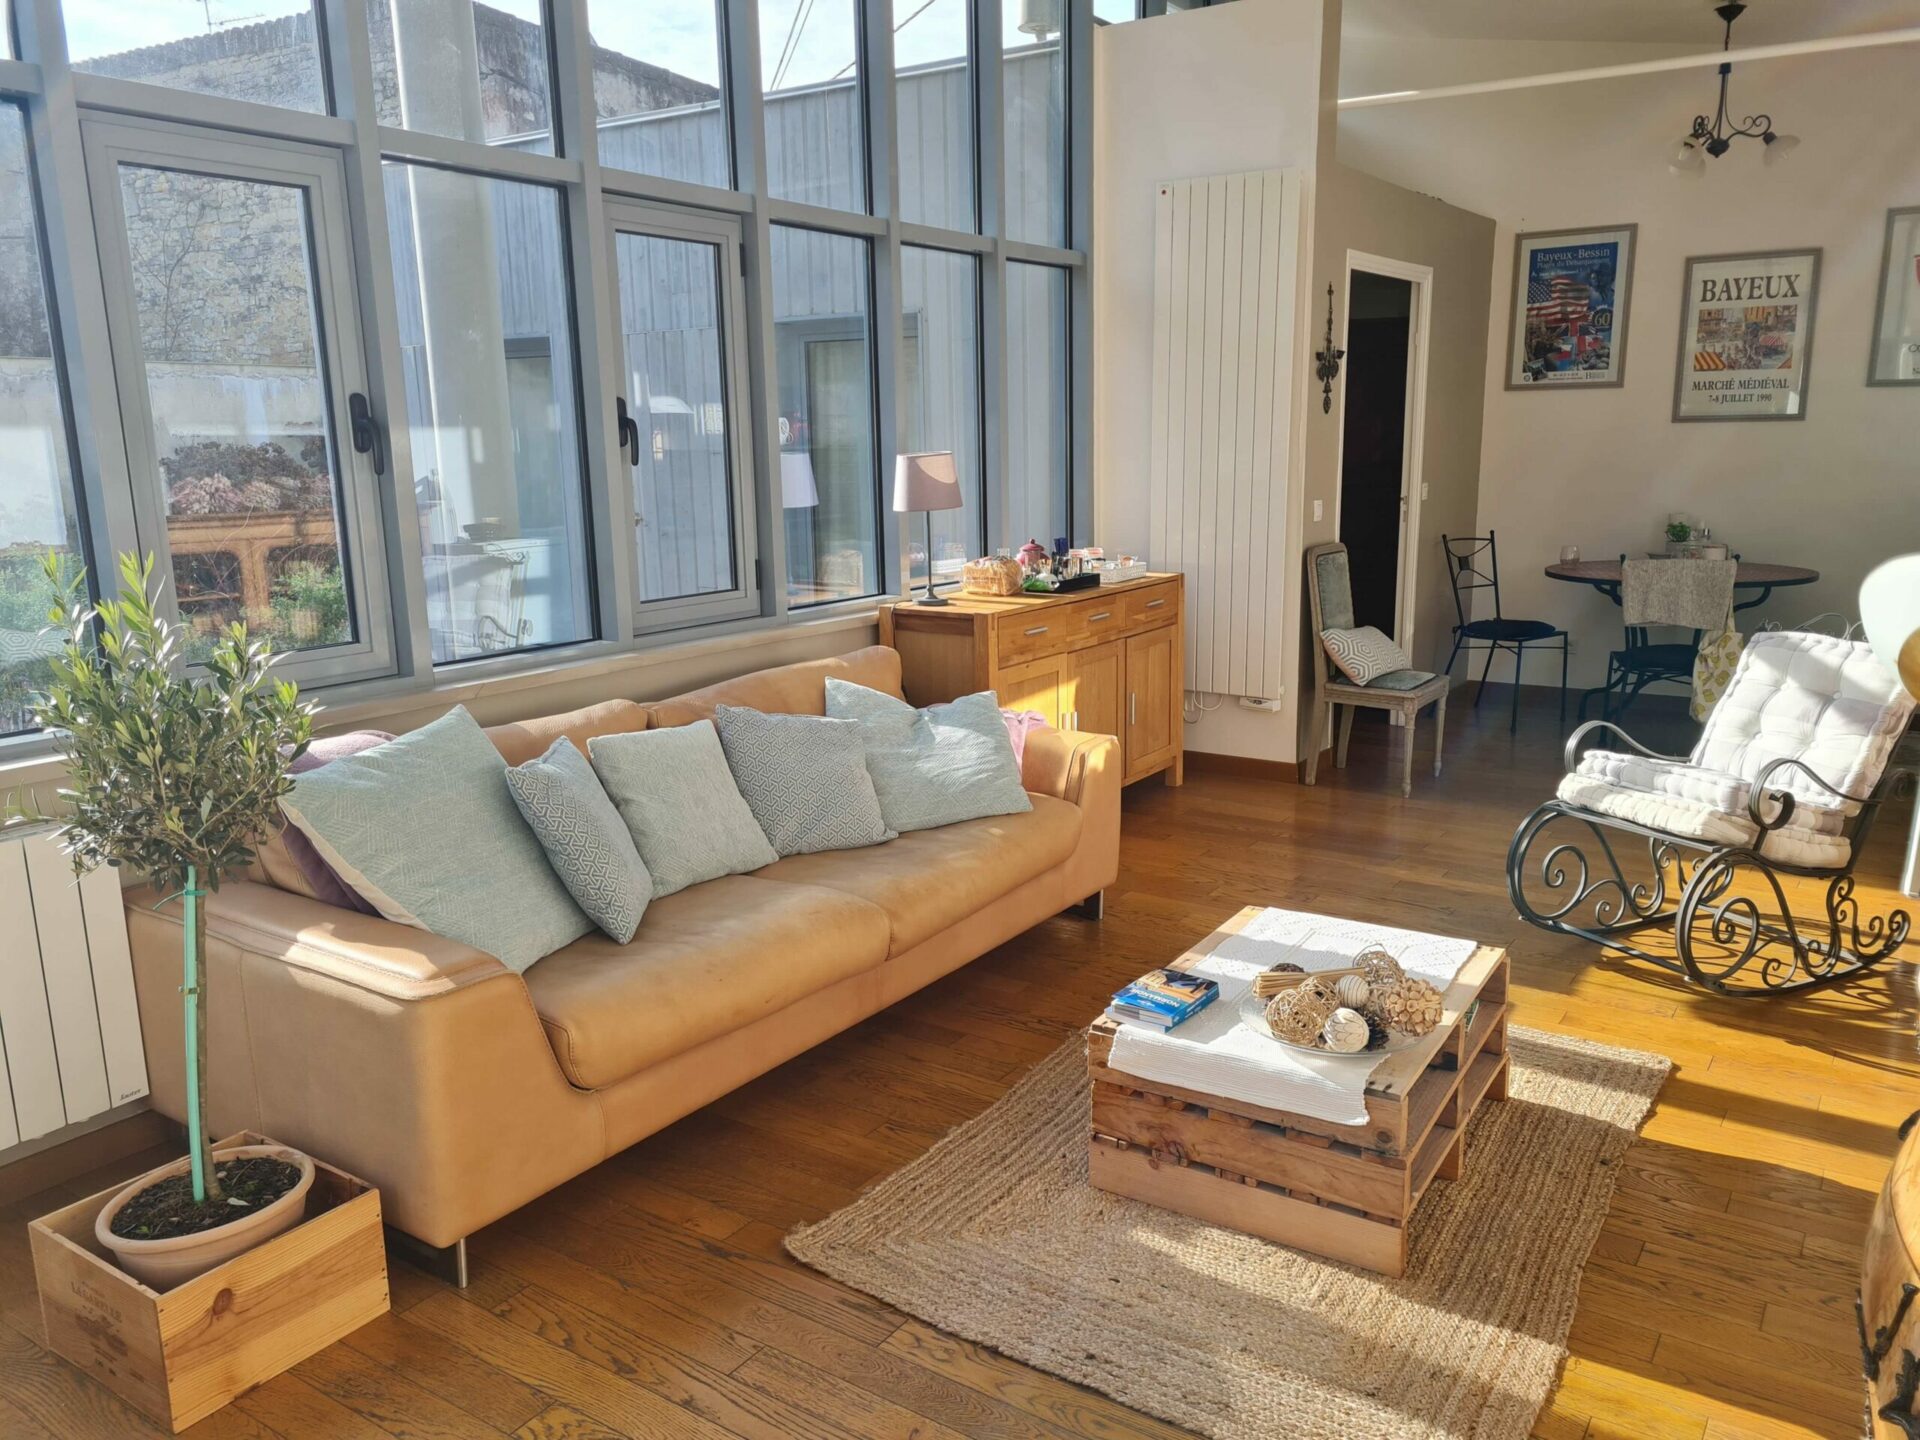 Airbnb Tour : visite privée d'une tiny house à Bayeux